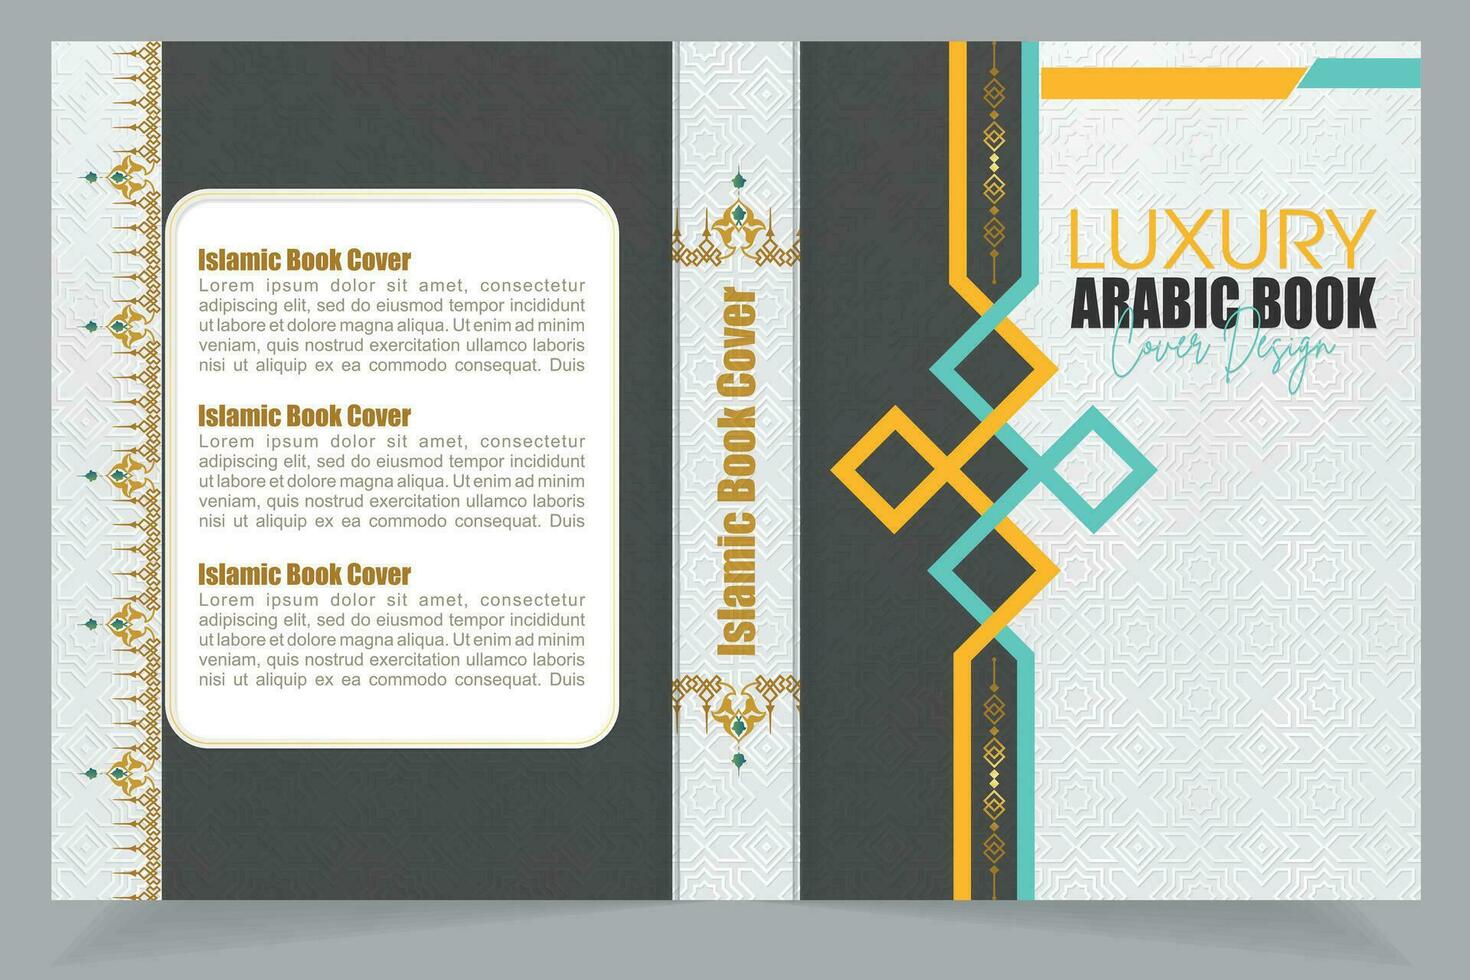 bellissimo Arabo Corano, Corano Marrone pensionante, islamico Corano libro copertina vettore